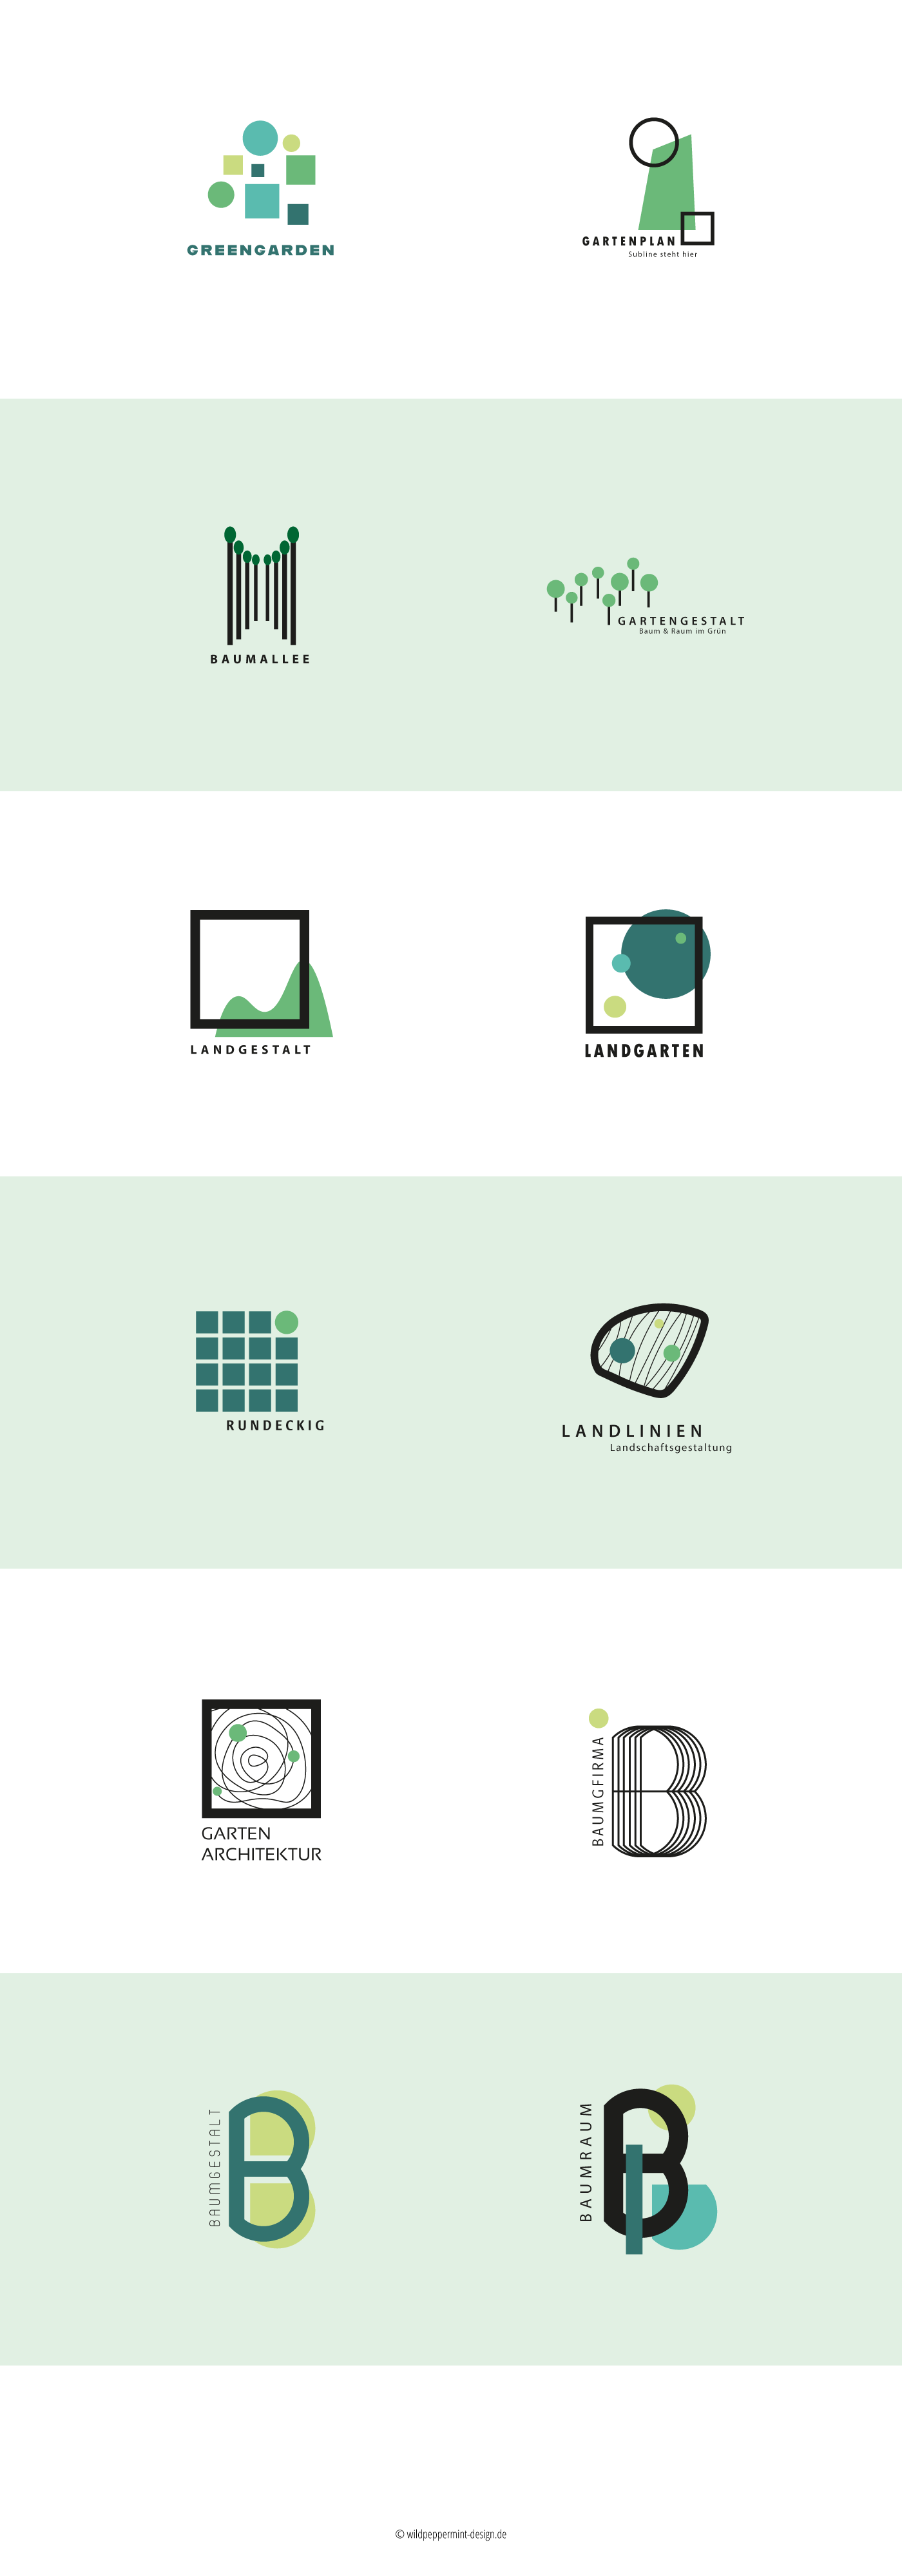 logos geometric architektur Garten landscahftsplanung Gartenplanung logos green